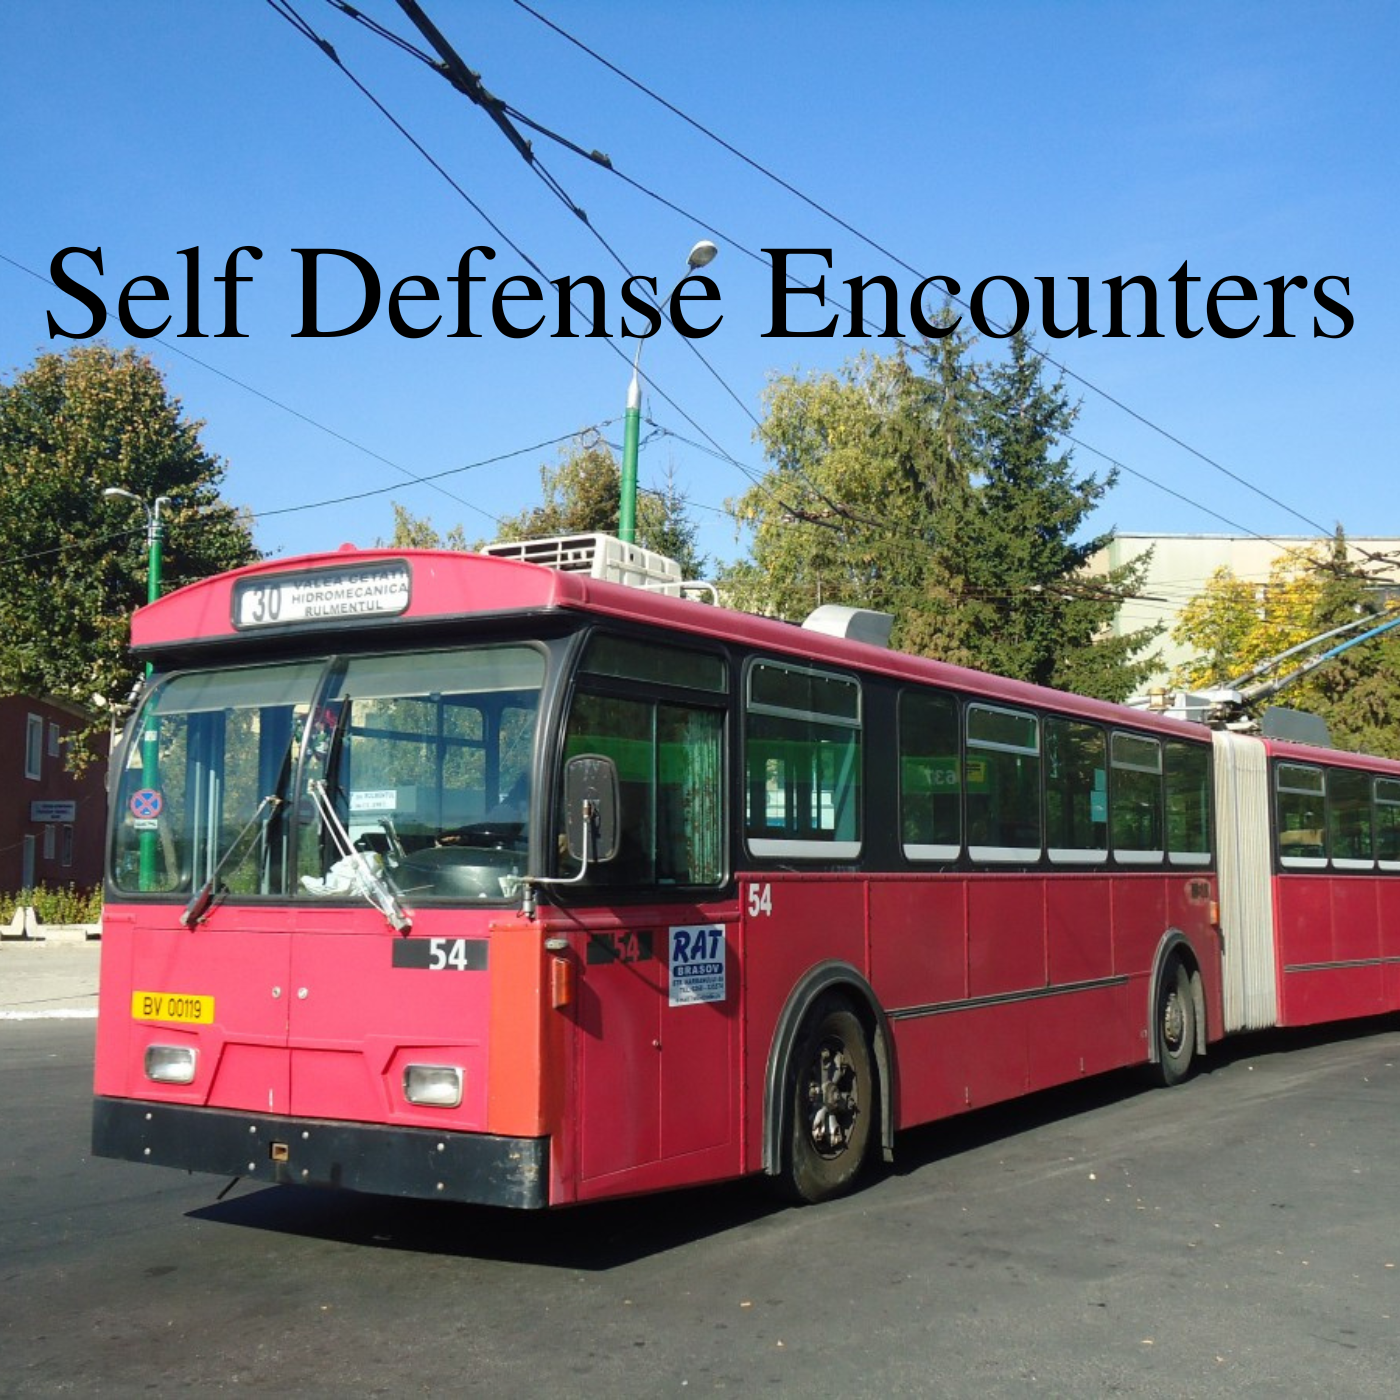 * Self Defense Encounters